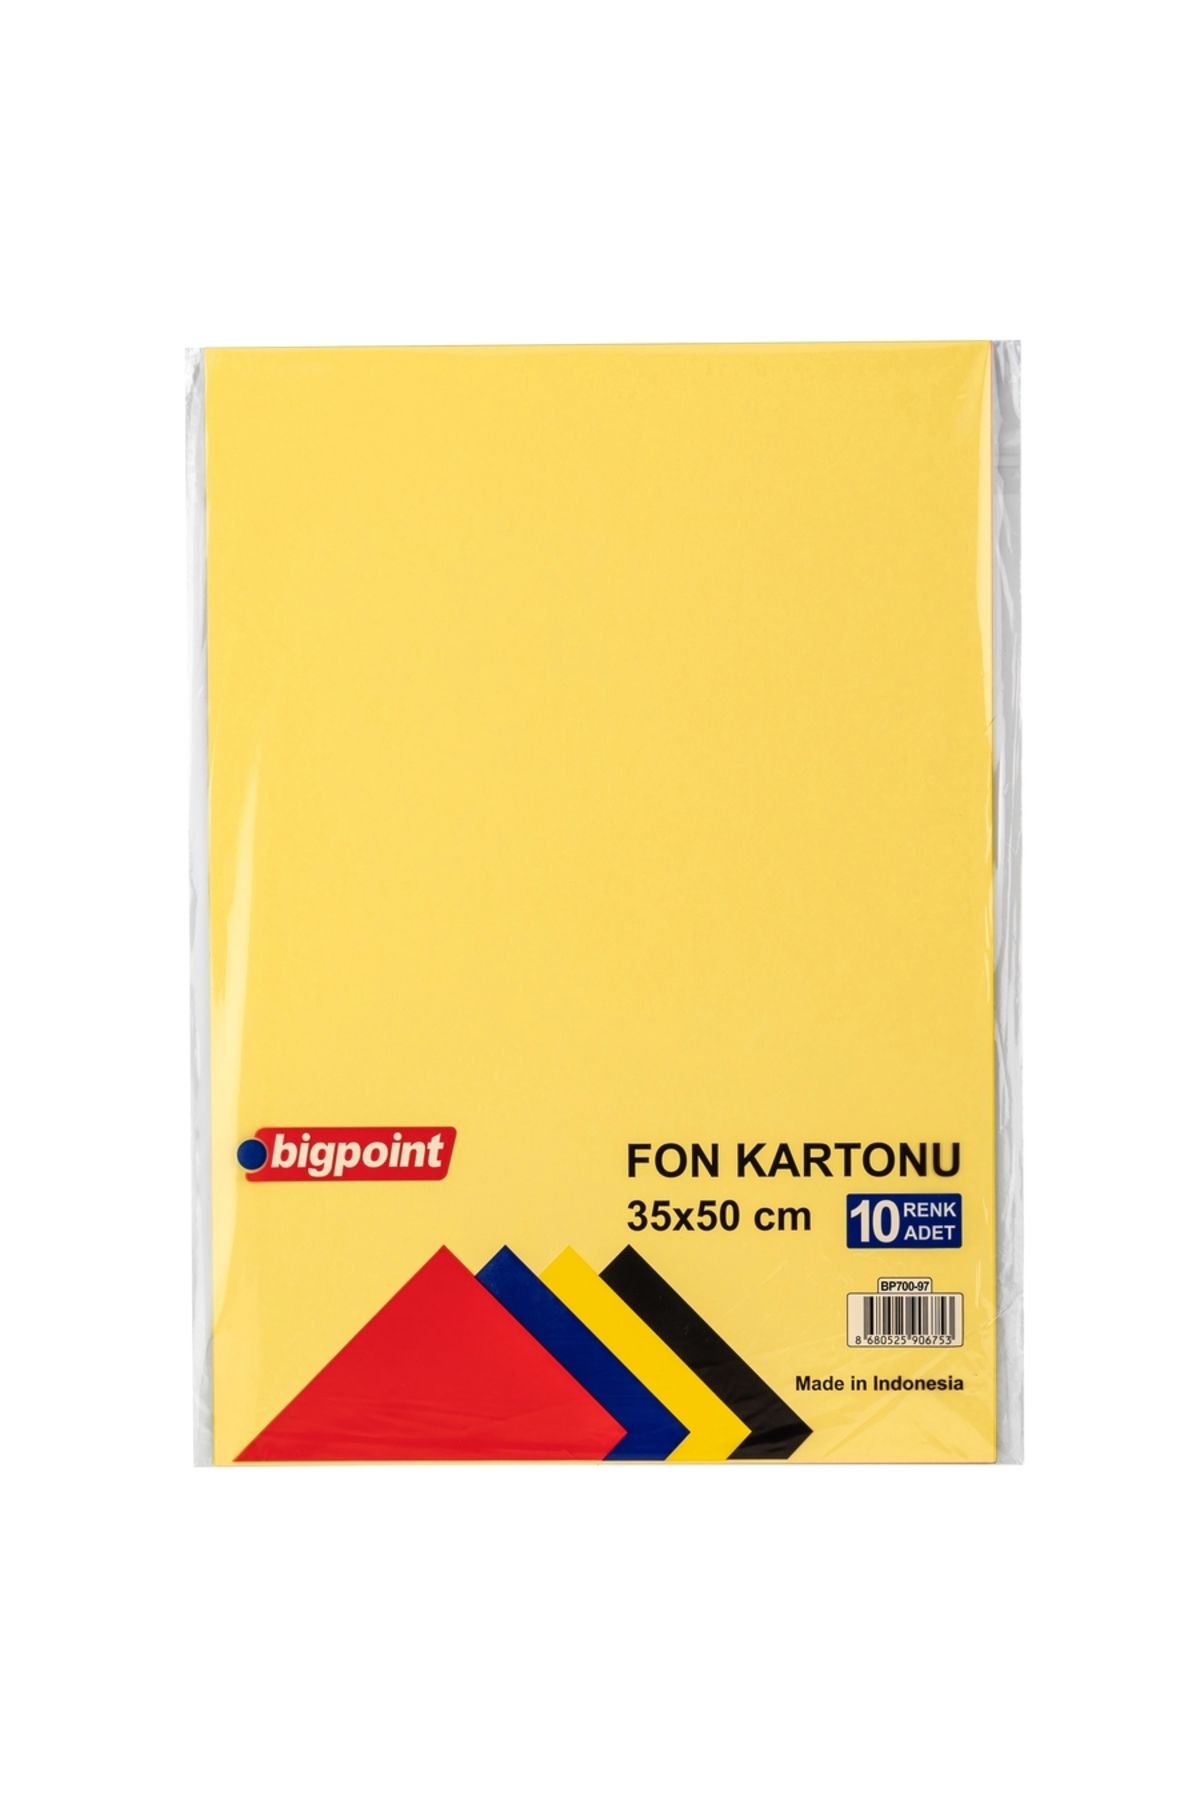 Bigpoint Fon Kartonu 35x50cm 160 Gram Karışık 10 Renk 10'lu Paket